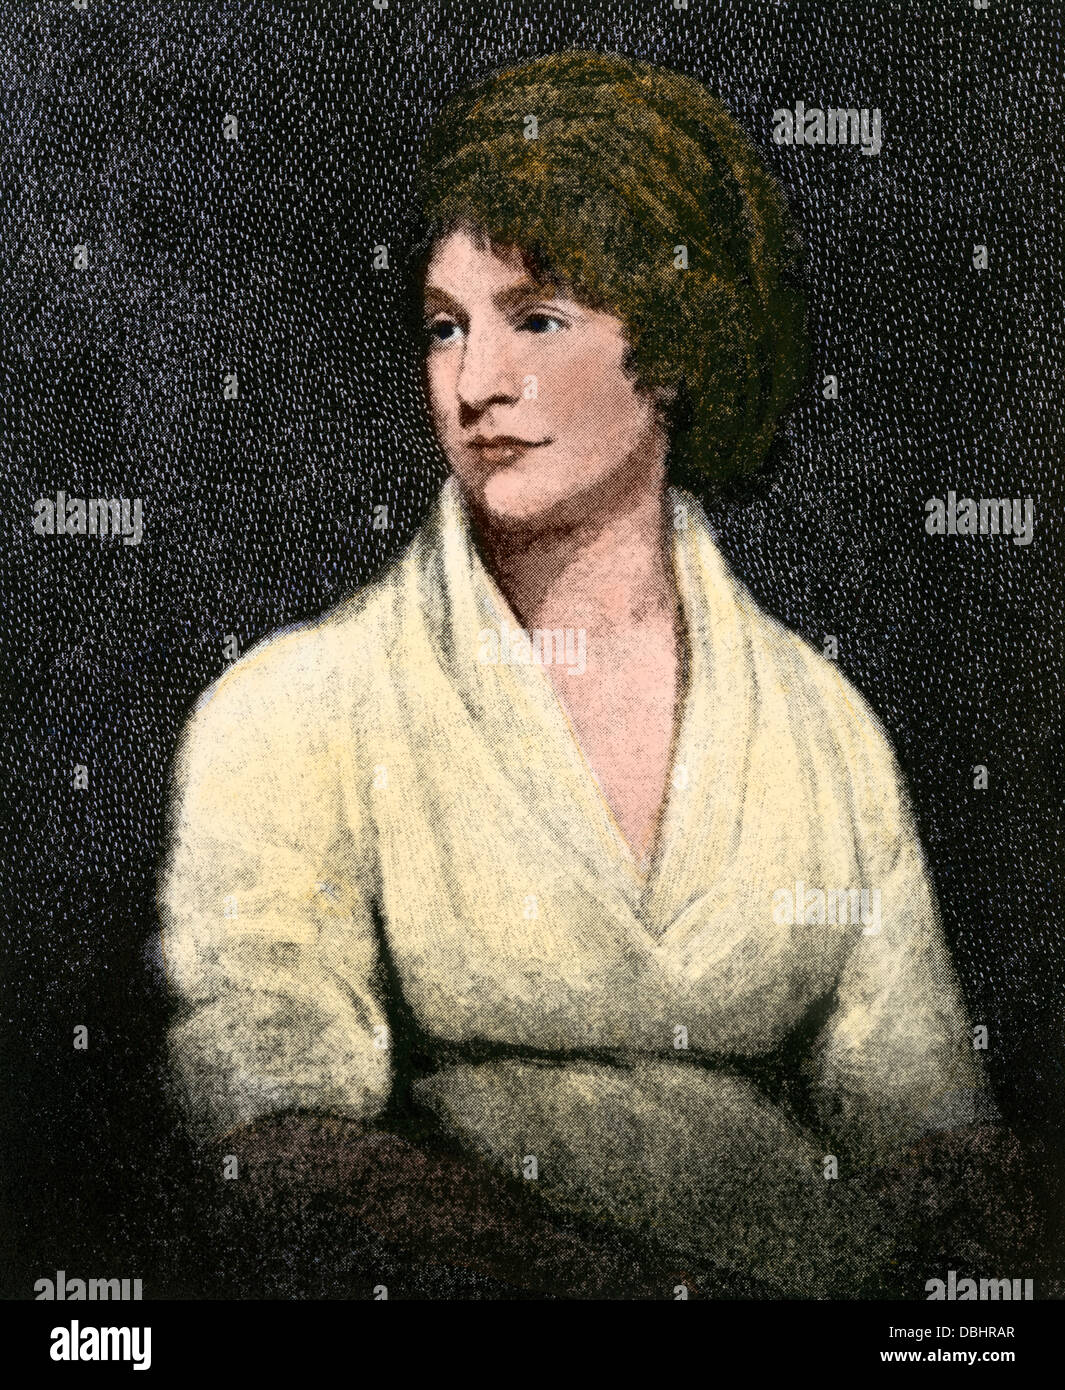 Mary Wollstonecraft Shelley, Autor von Frankenstein. Handcolorierte halftone Reproduktion eines Portrait Stockfoto